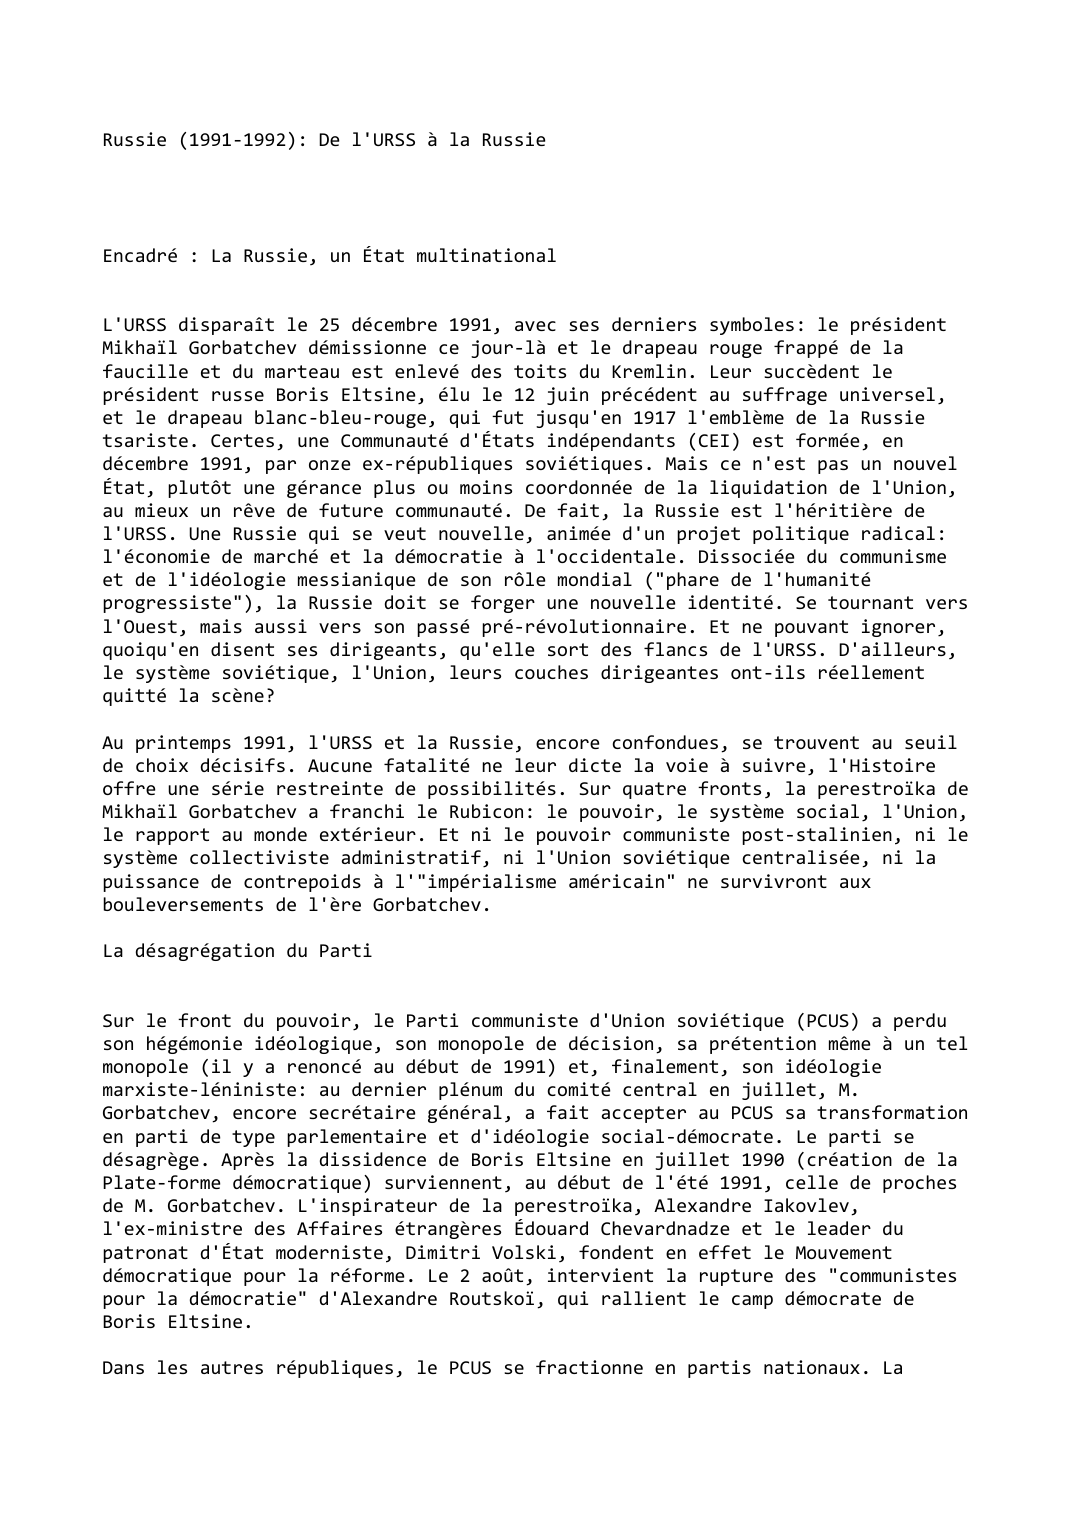 Prévisualisation du document Russie (1991-1992): De l'URSS à la Russie